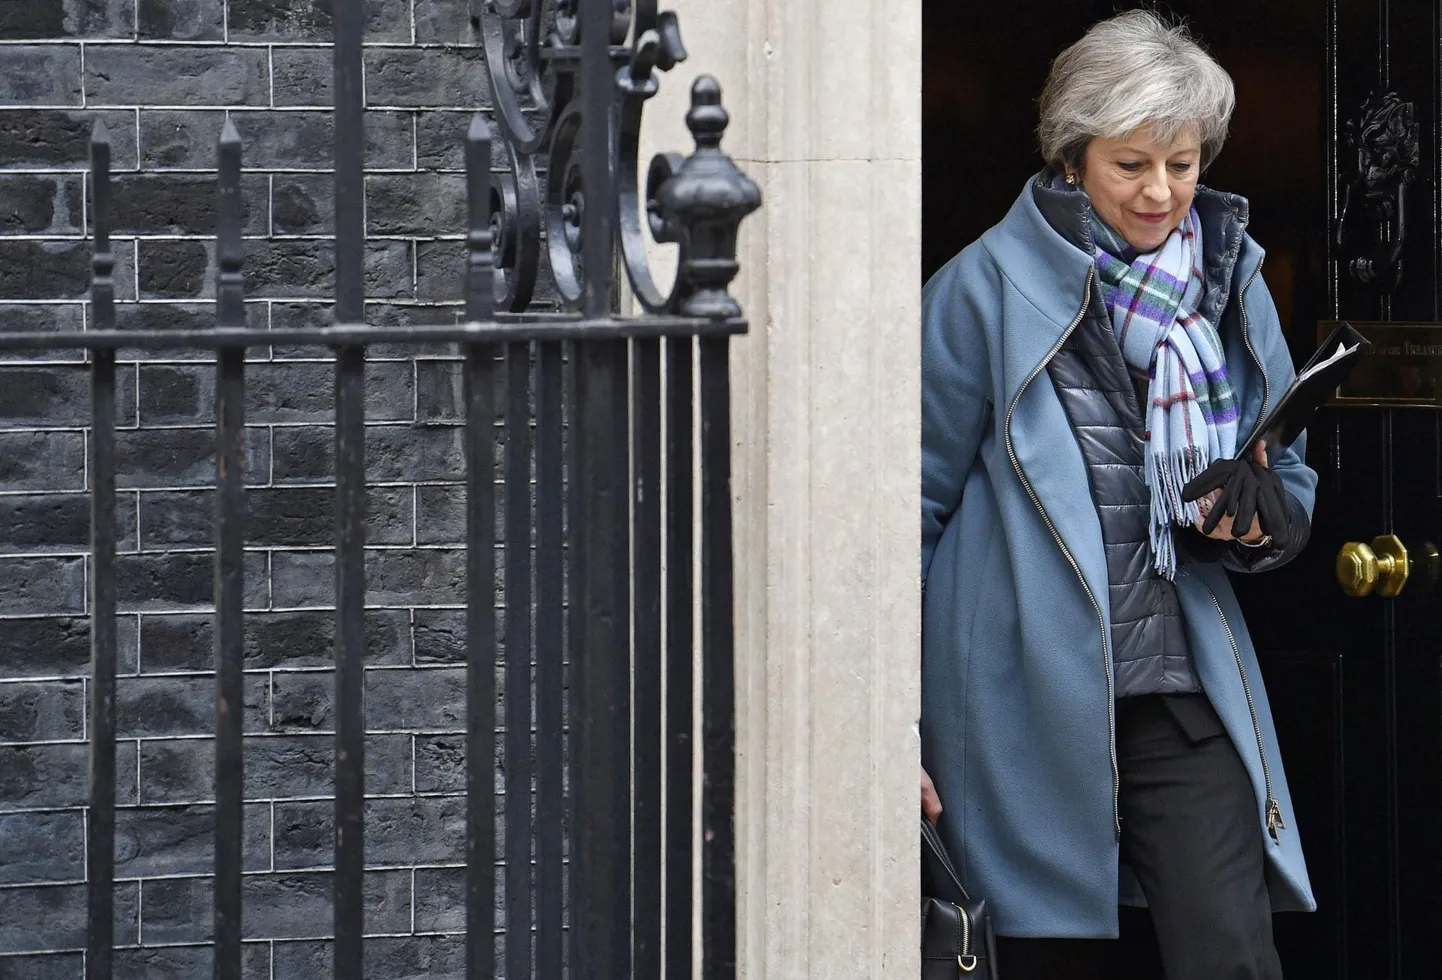 Ühendkuningriigi peaminister Theresa May Downing Streetilt lahkumas.